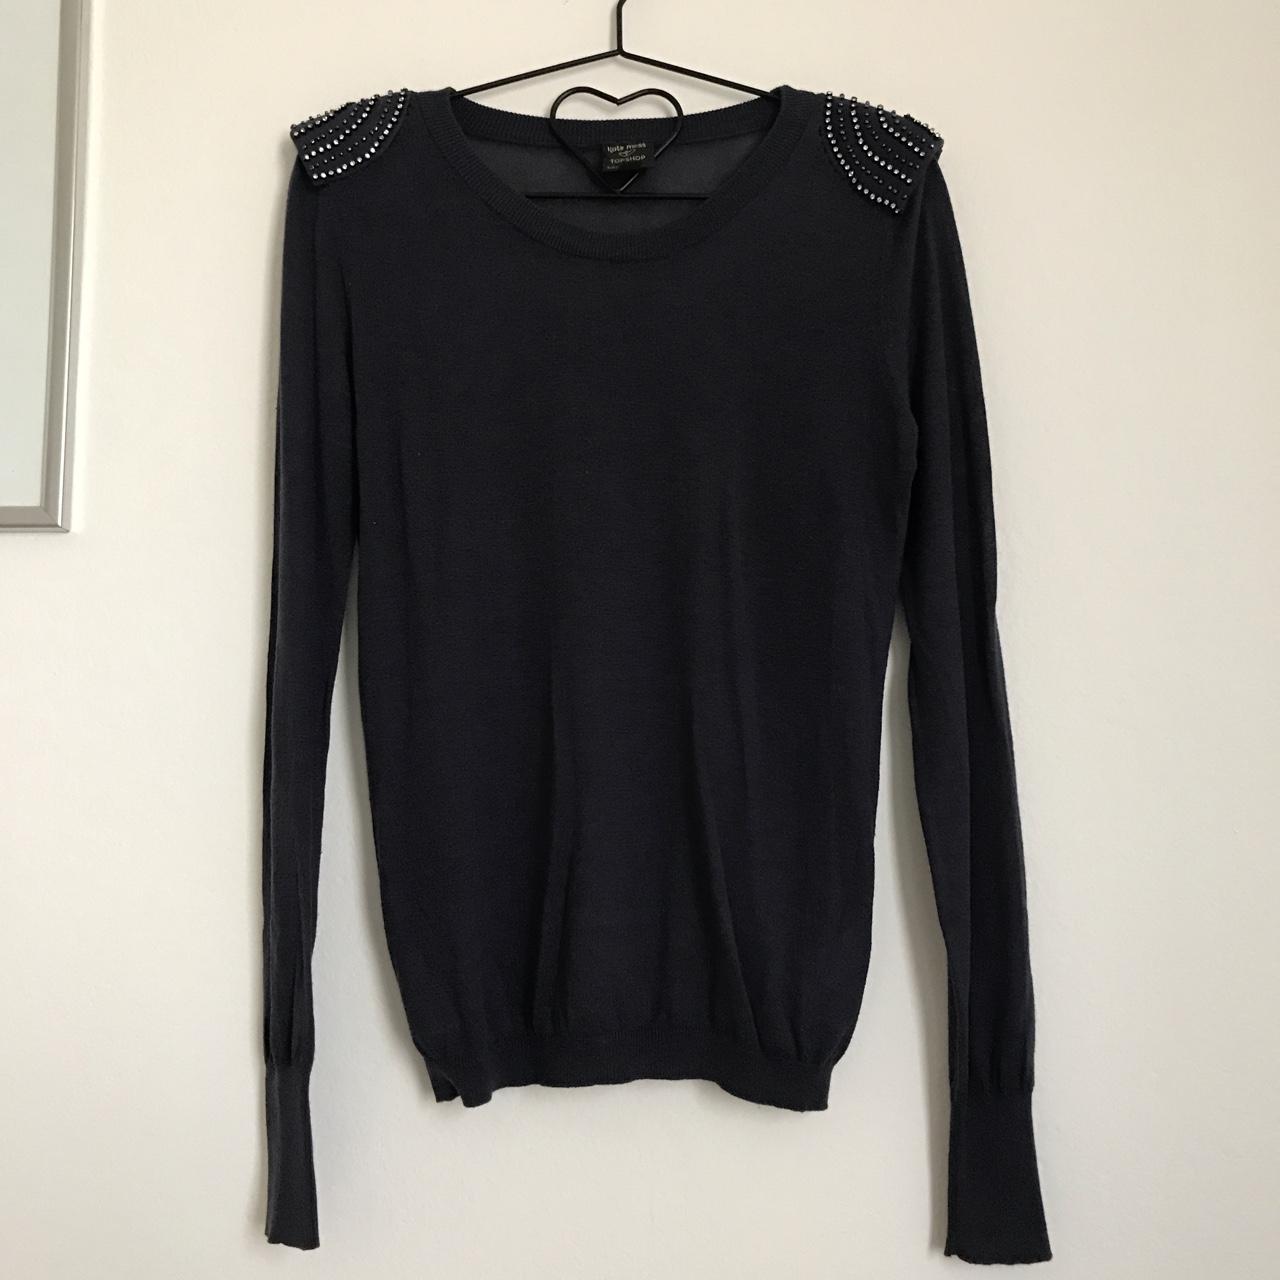 Kate Moss x Top Shop sweater (52% Lyocel; 42%... - Depop